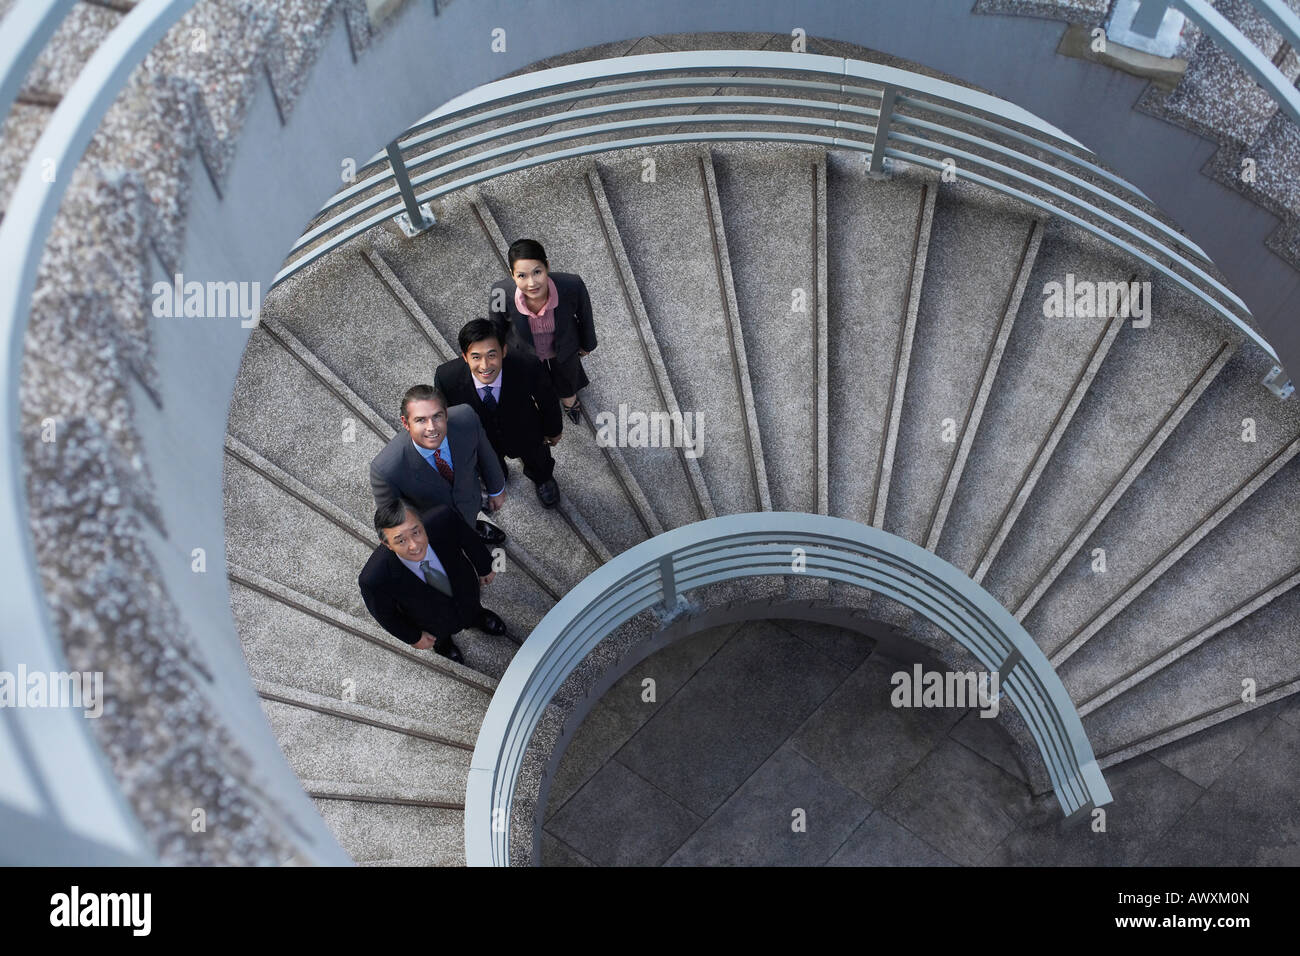 Quattro soci di affari in piedi su una scalinata a spirale, ritratto Foto Stock